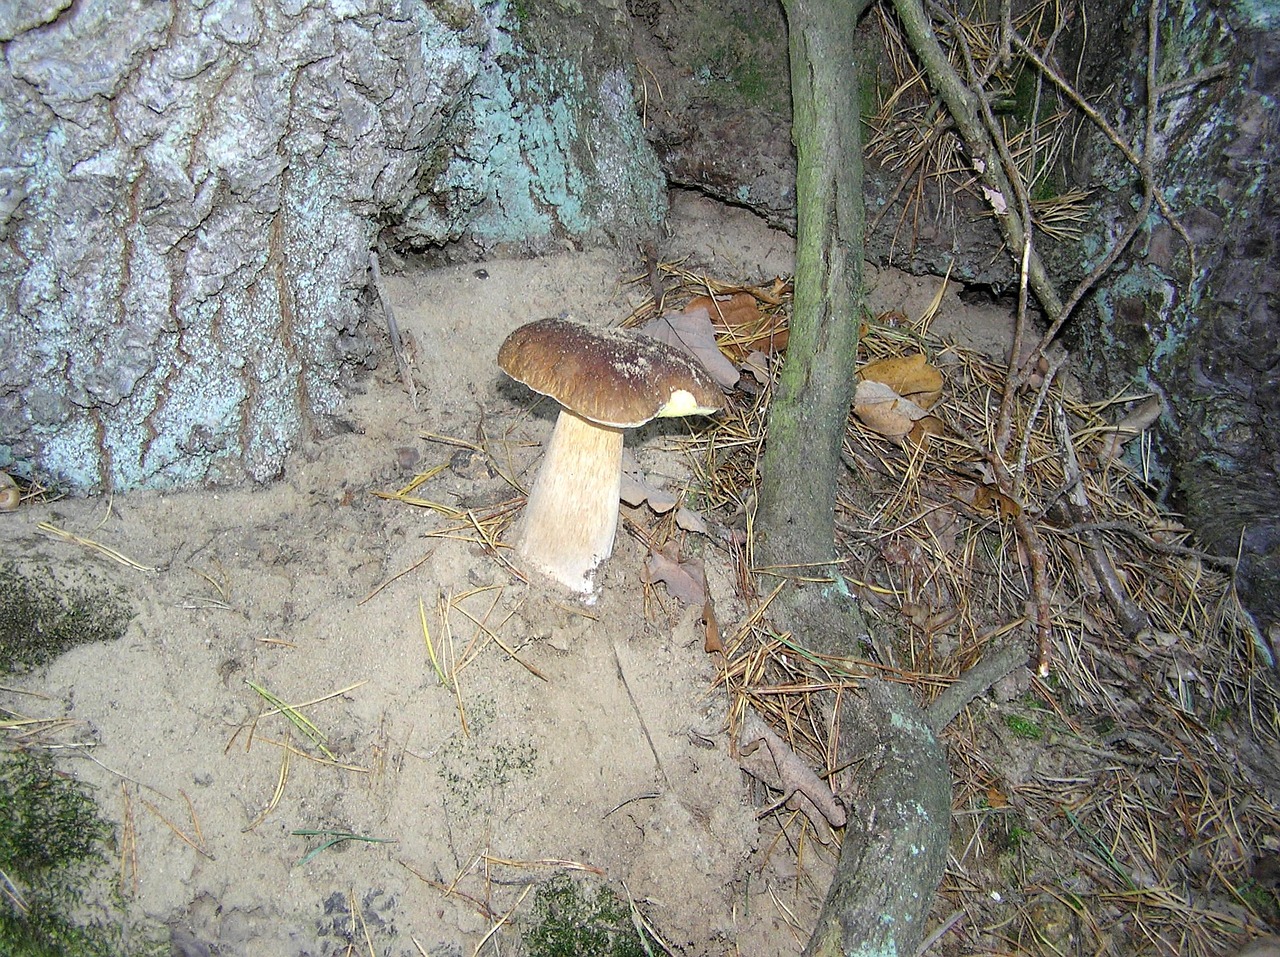 steinilz mushroom forest mushroom free photo